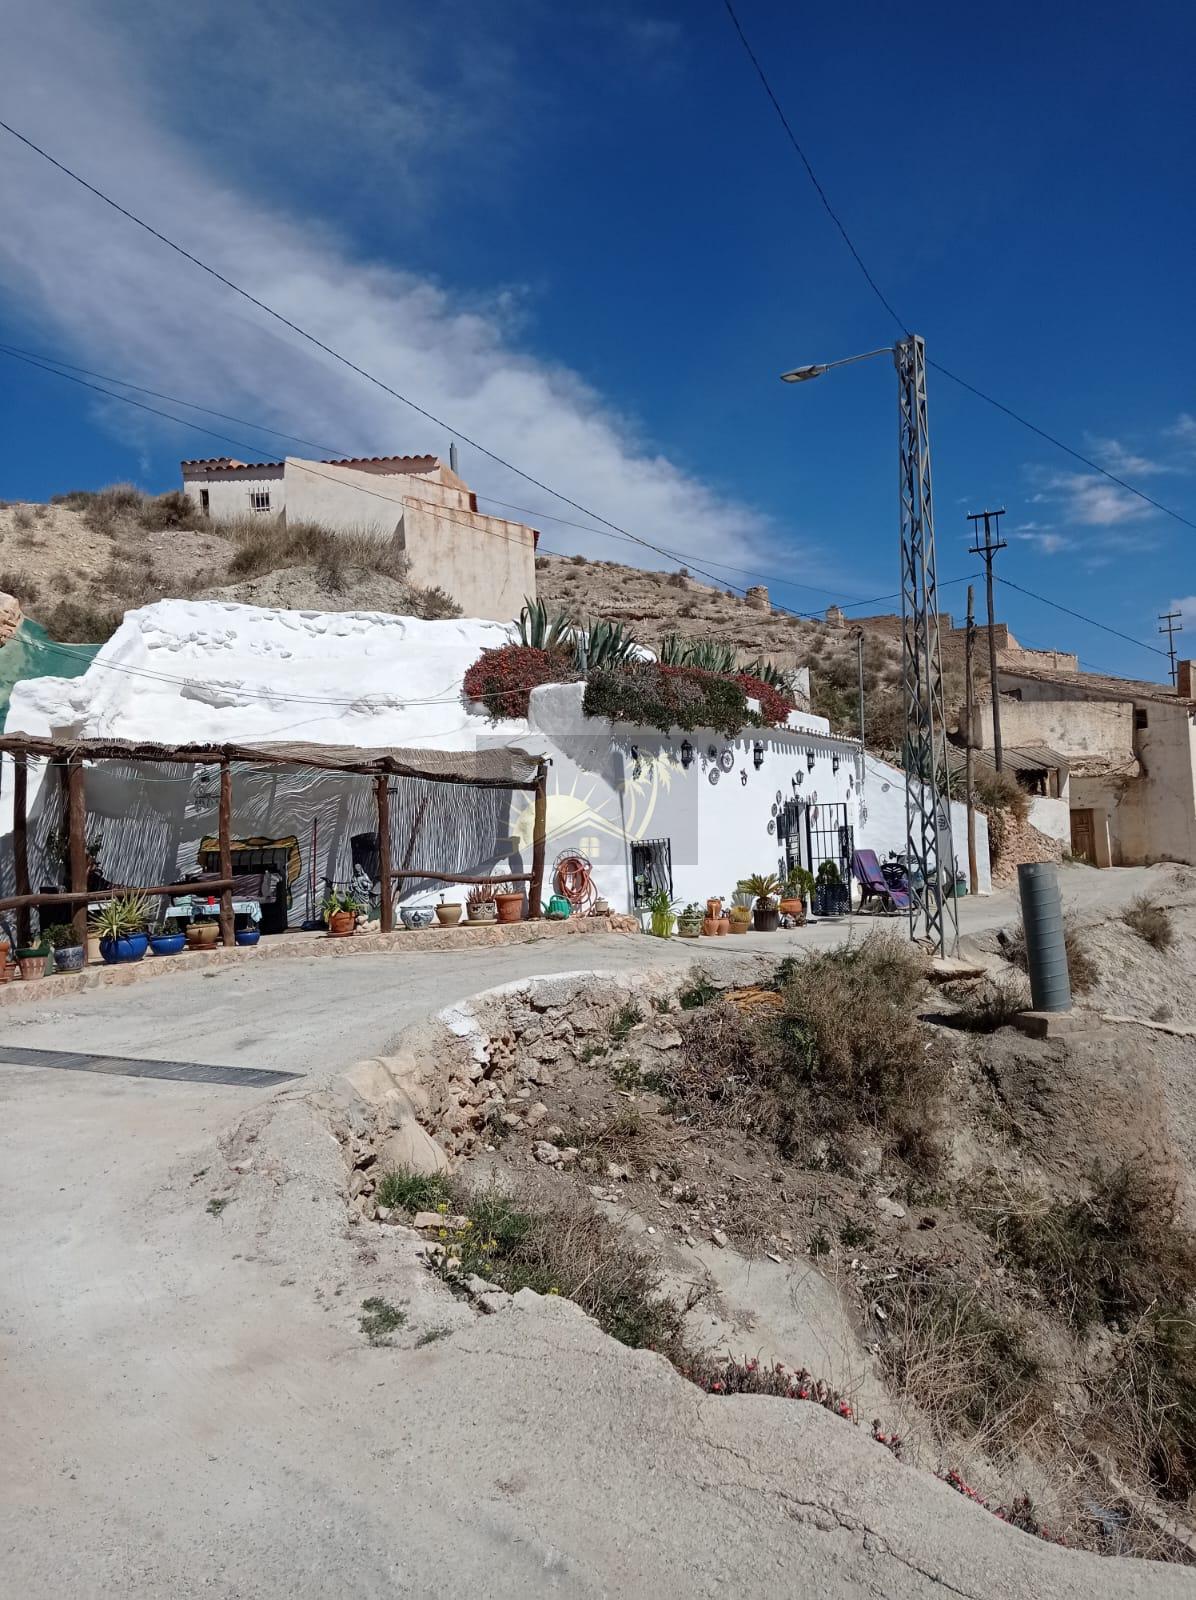 For sale of rural property in Zújar